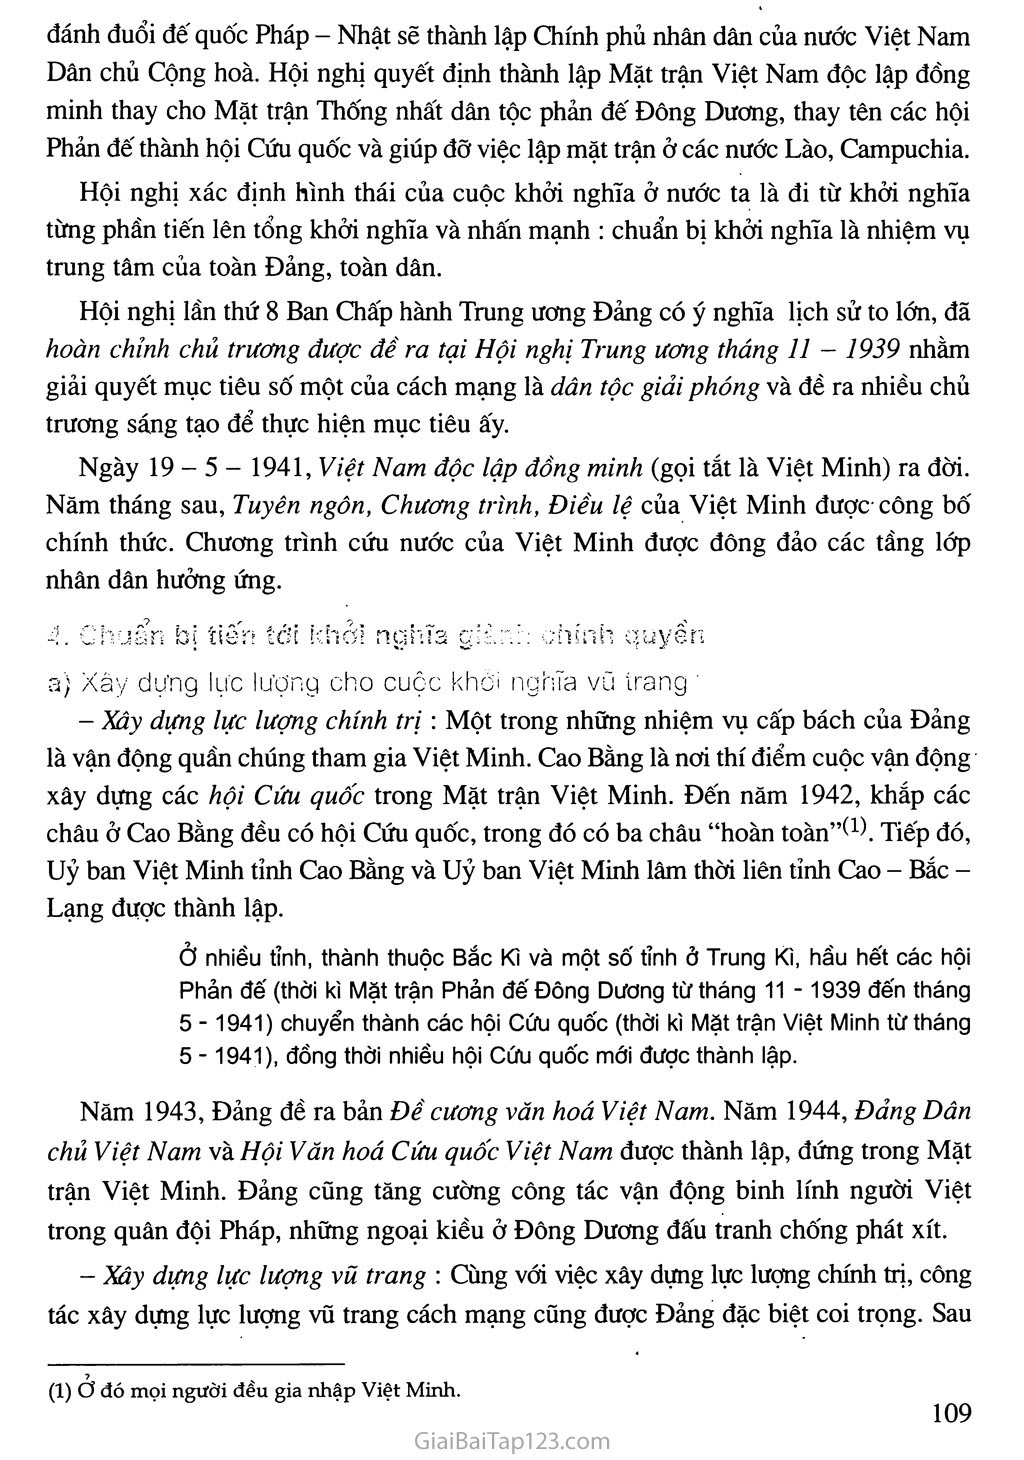 Bài 16. Phong trào giải phóng dân tộc và Tổng khởi nghĩa tháng Tám (1939 - 1945). Nước Việt Nam Dân chủ Cộng hoà ra đời trang 8